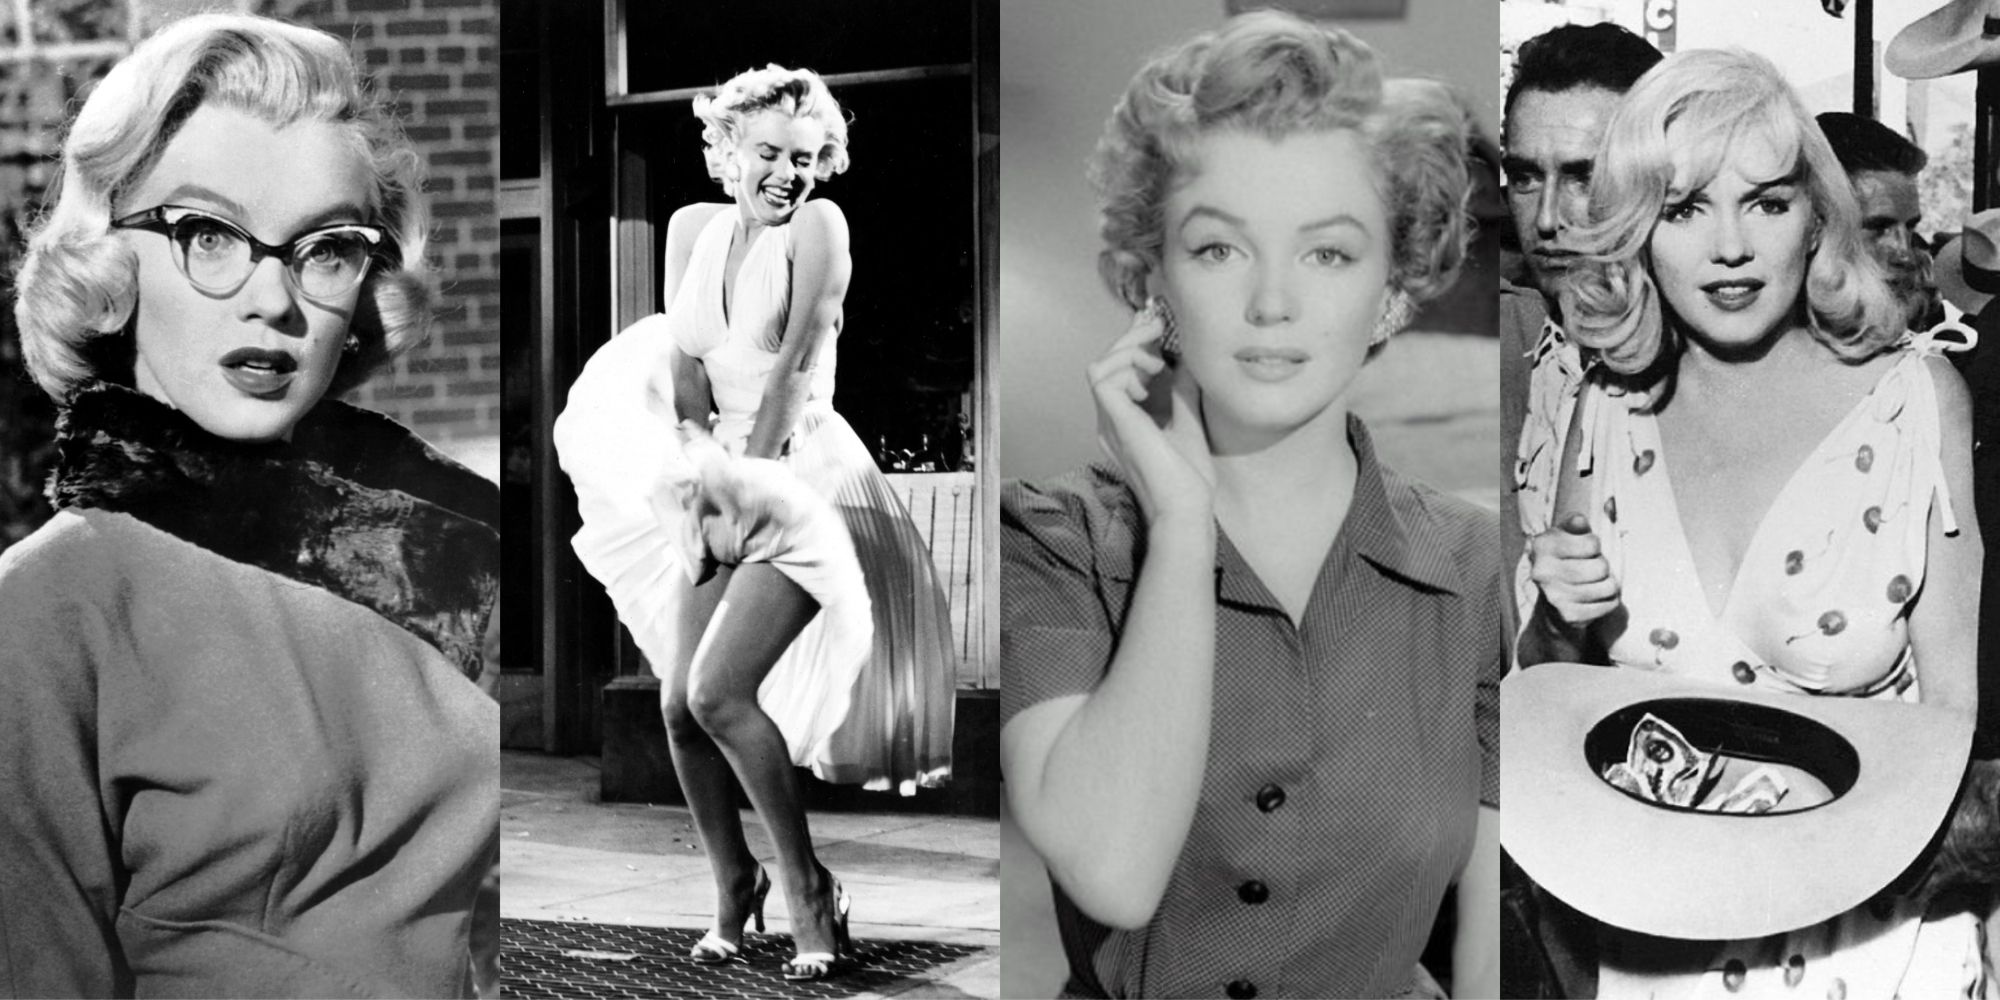 Four black and white stills of Marilyn Monroe